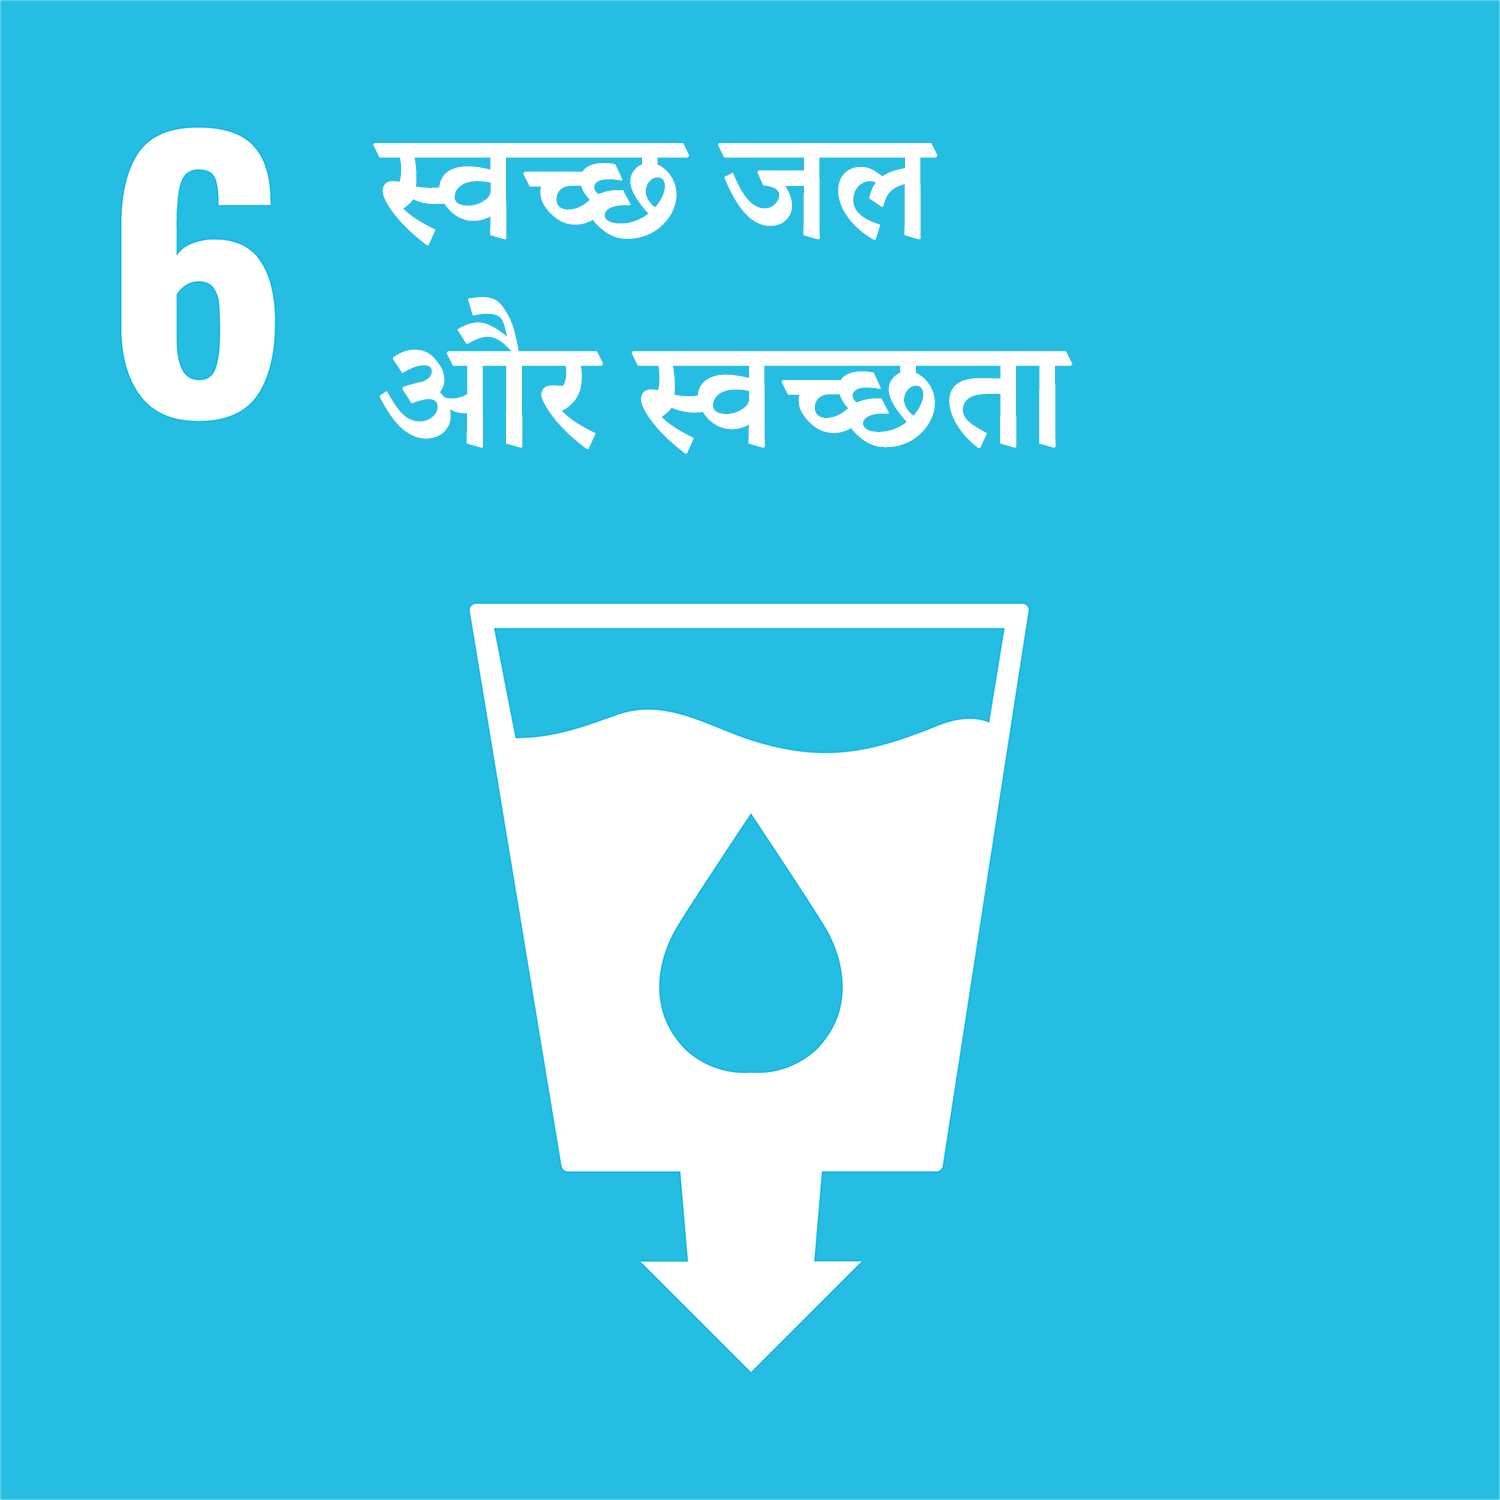 लक्ष्य 6: स्वच्छ जल और स्वच्छता